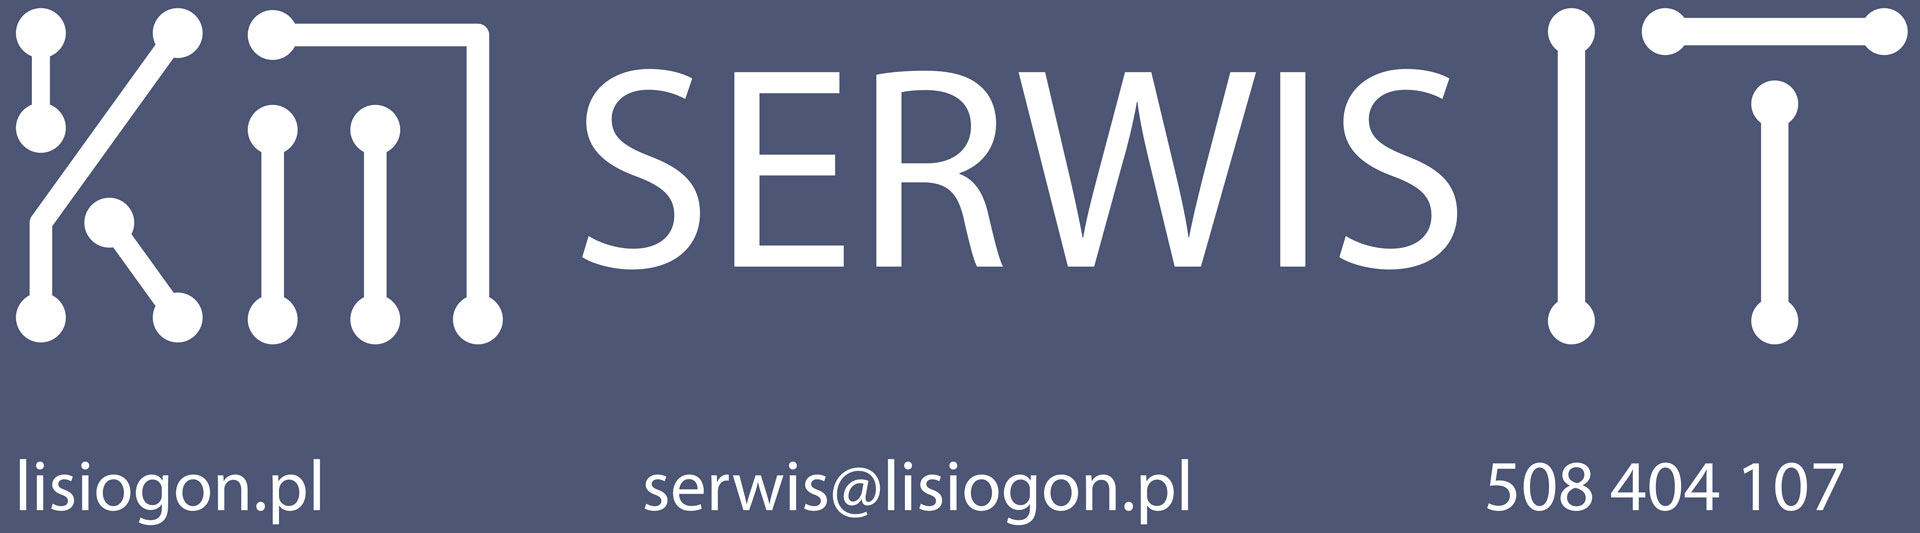 Logo company KM Serwis IT